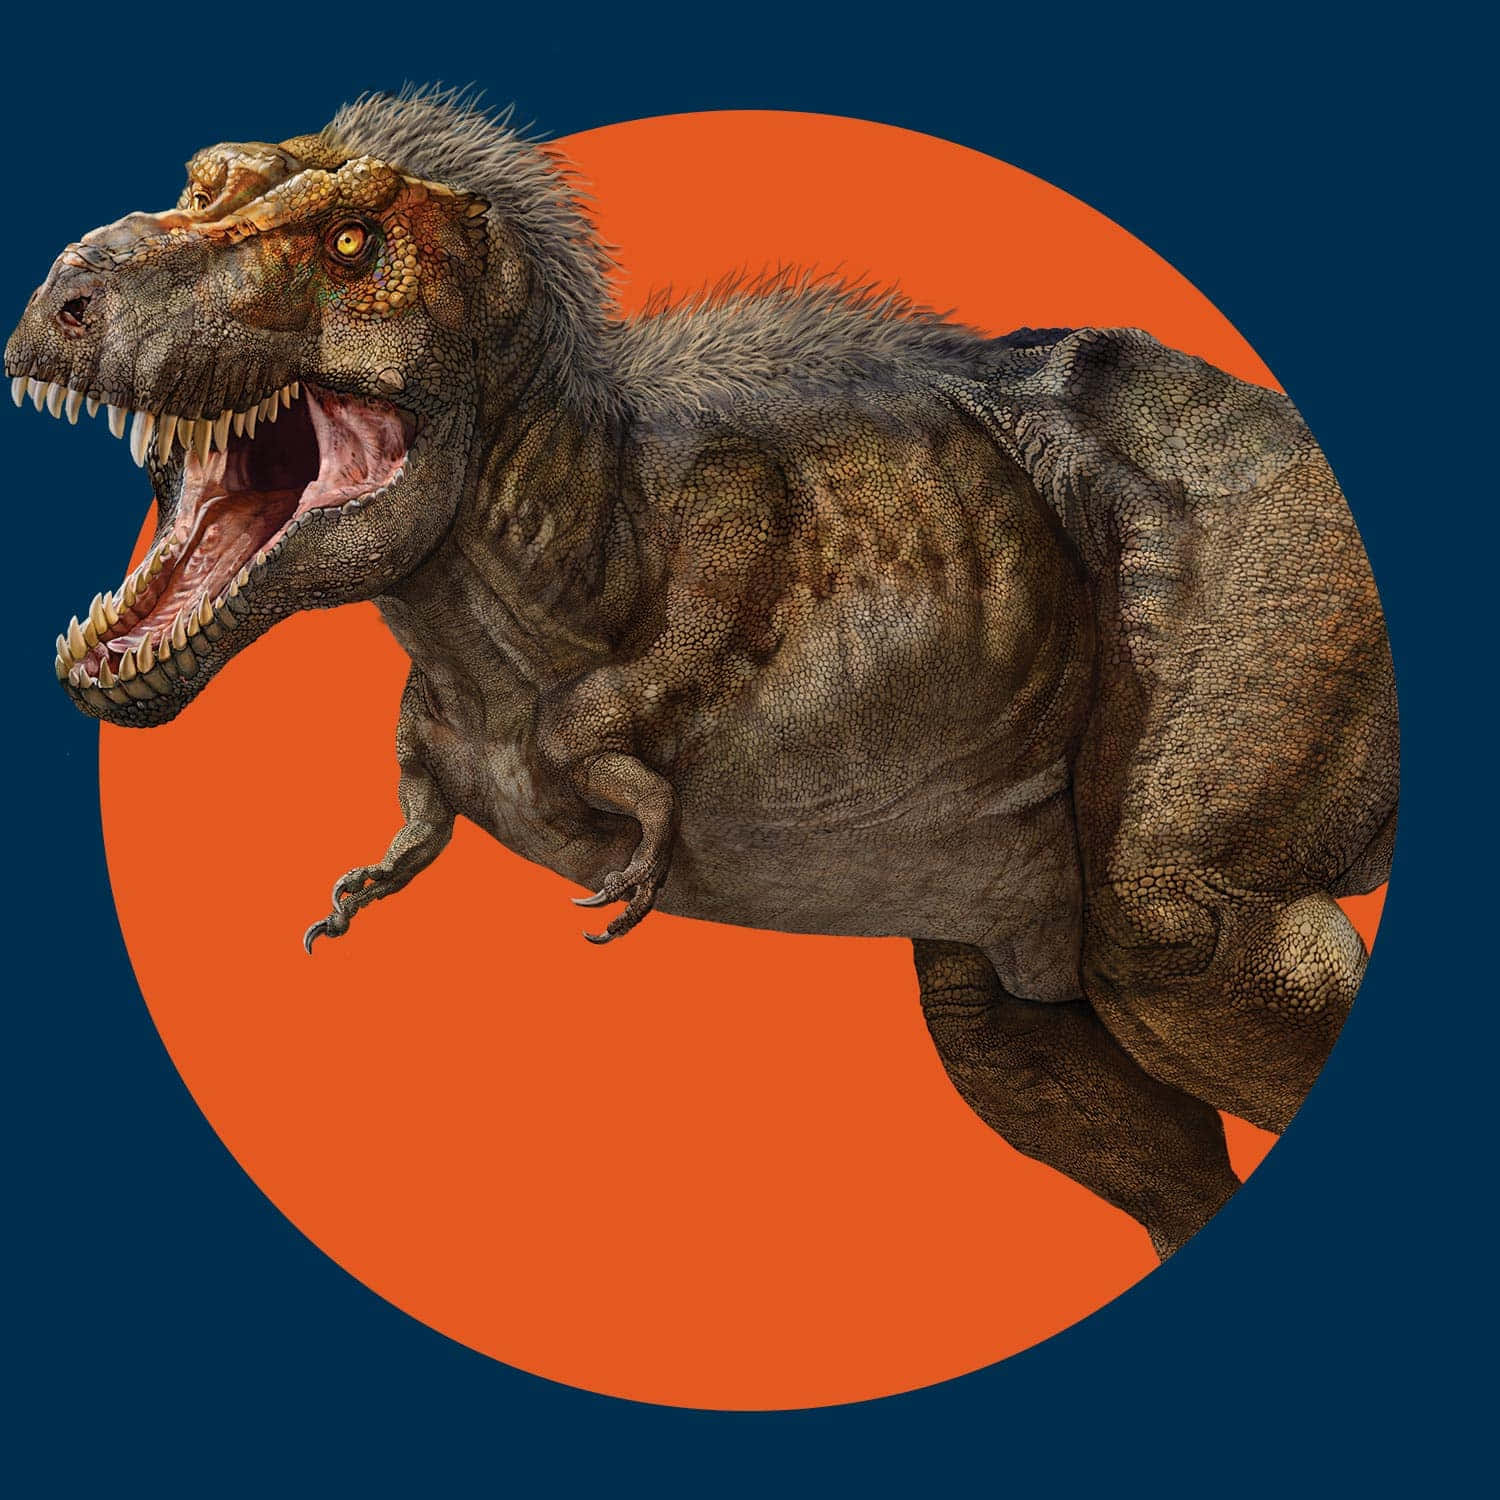 Umt-rex É Mostrado Em Um Círculo Laranja.